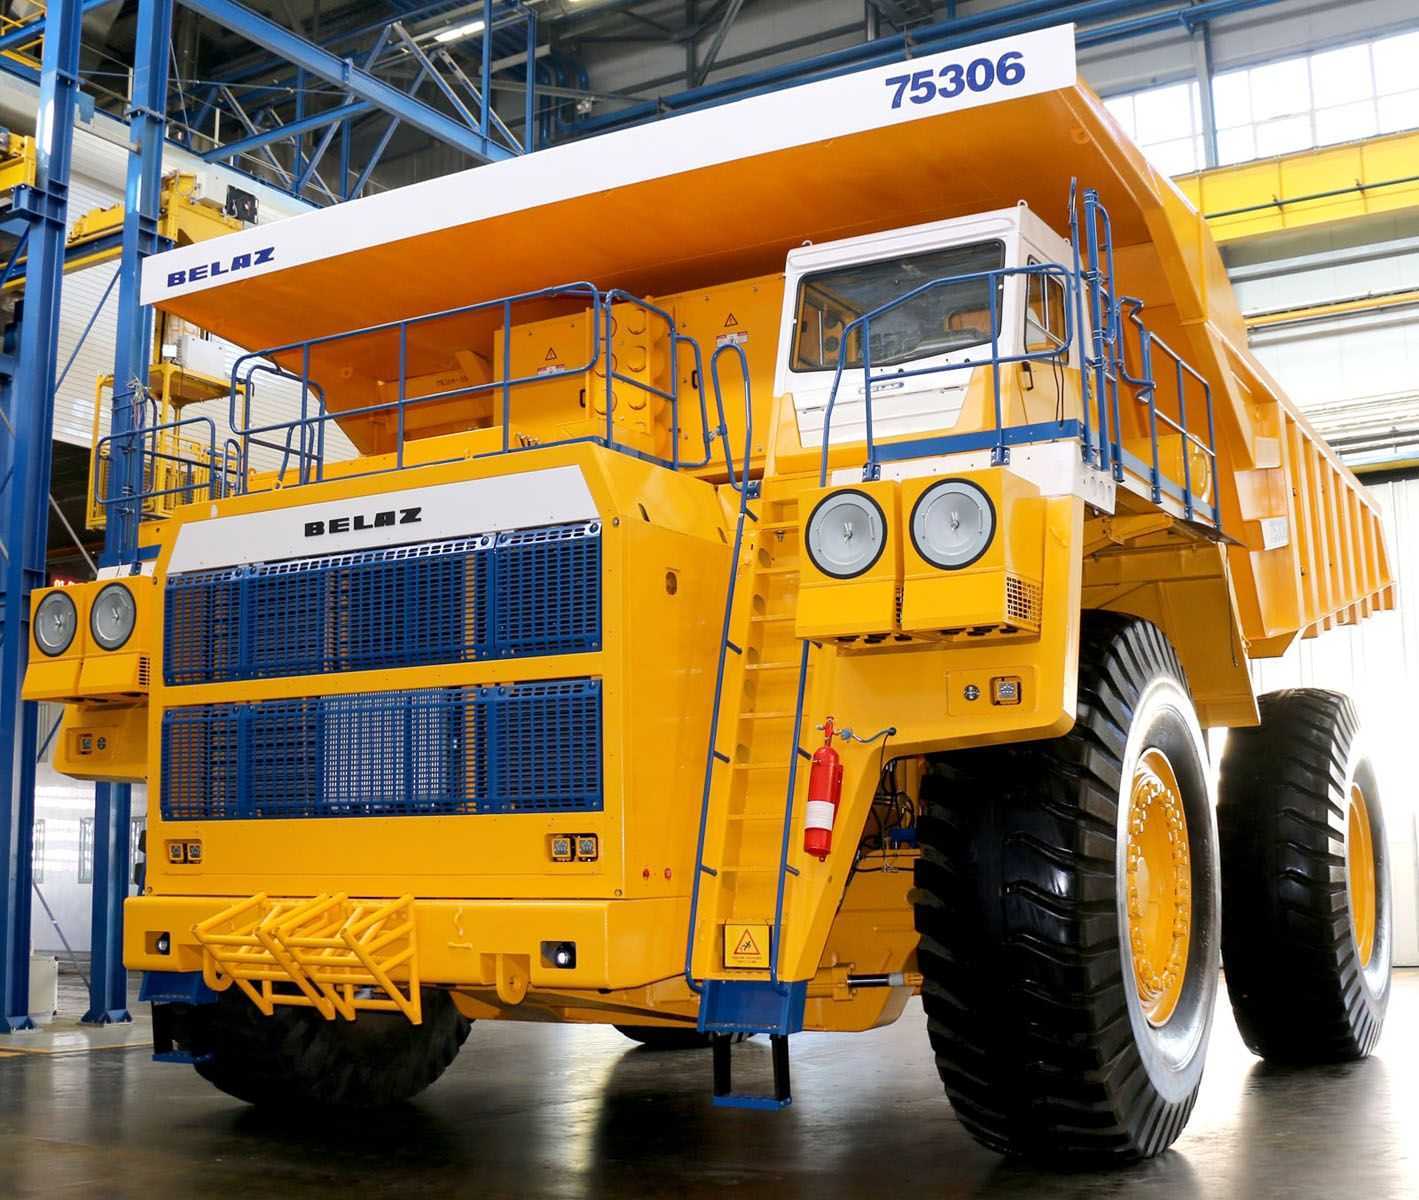 Перечень технических характеристик БелАЗов 7530х, их  и оснащение, а так же обзор 220 тонного карьерного самосвала с фото